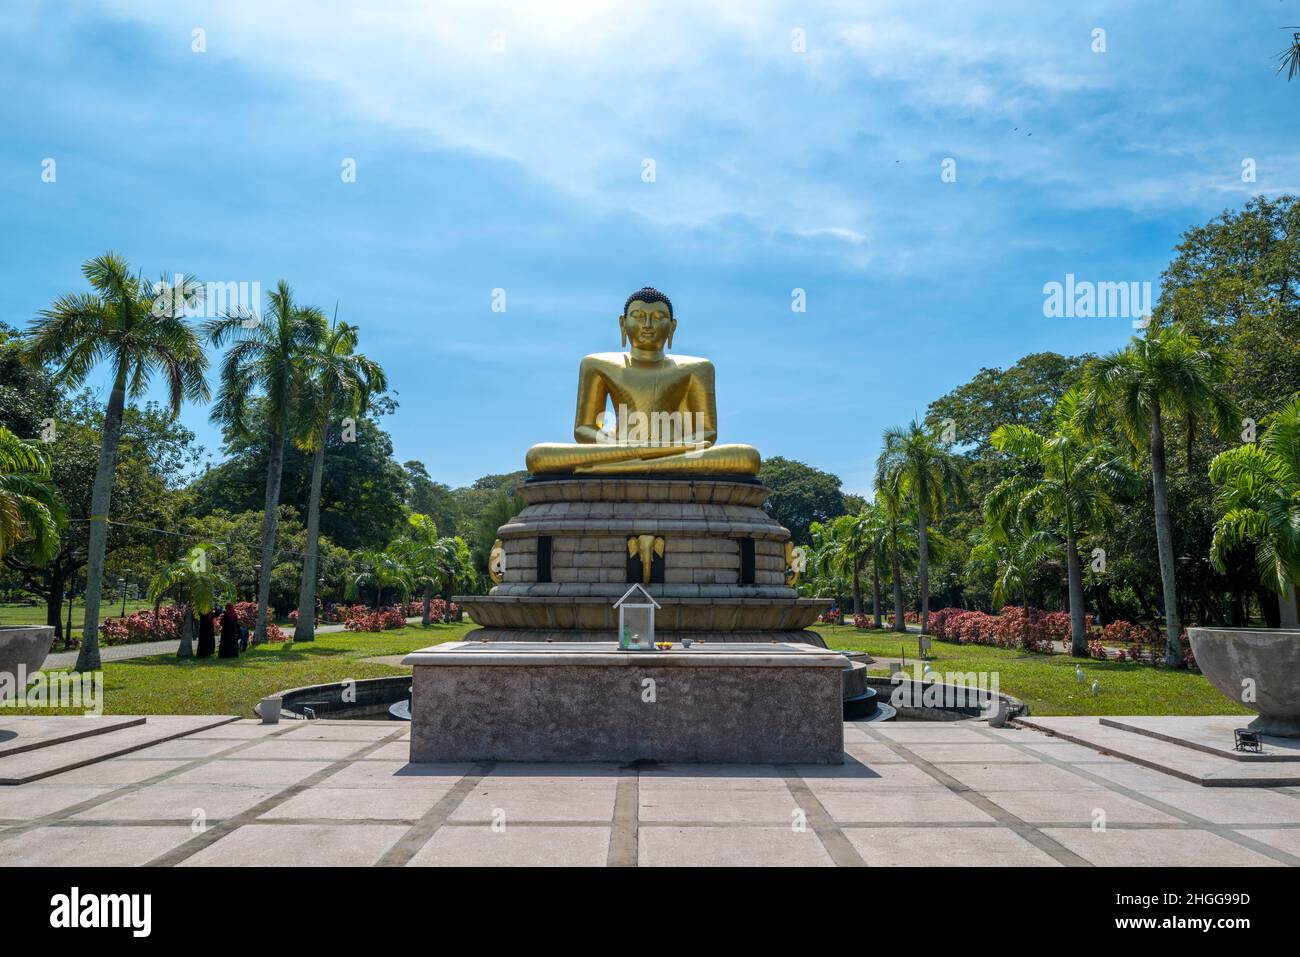 Statue of Guddha, Viharamahadevi Park Colombo Sri Lanka Stock Photo